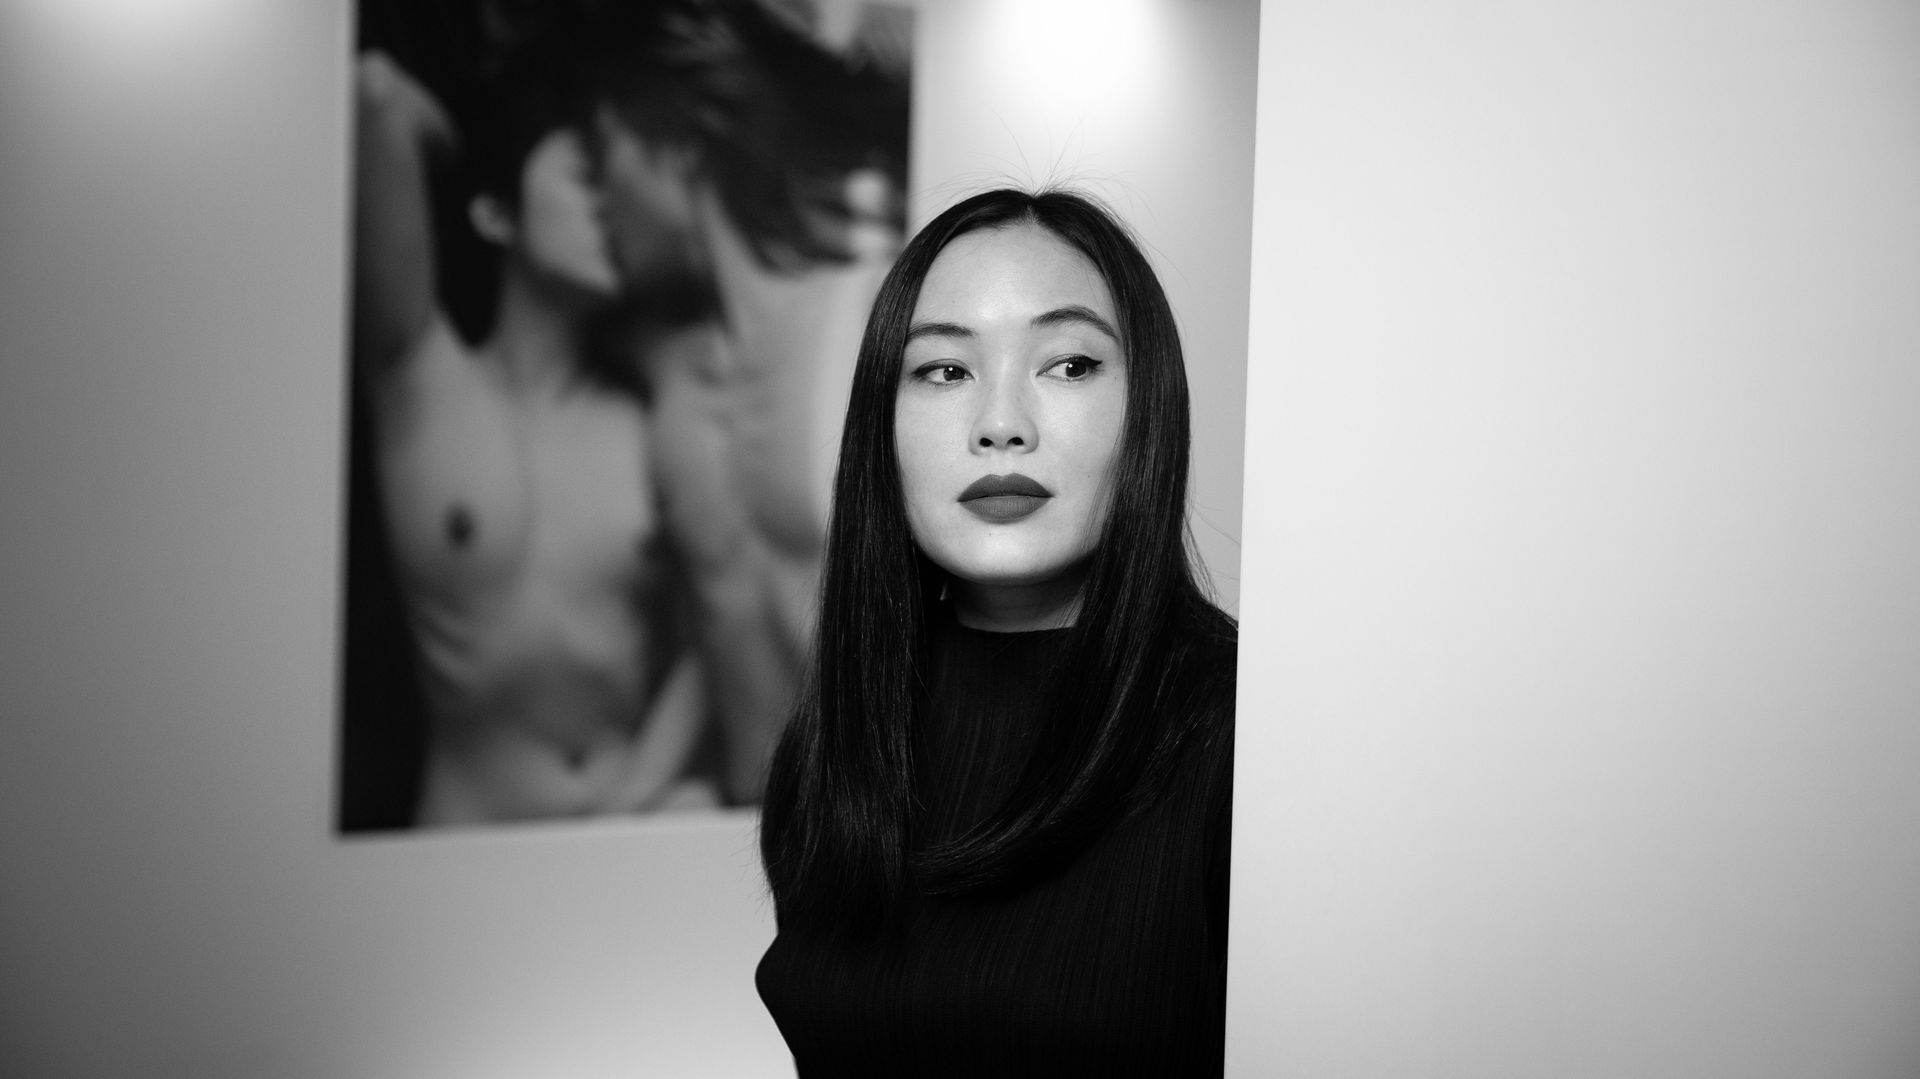 La photographe Luo Yang expose à Paris sa série "Girls" jusqu'au 30 novembre: des filles chinoises, qui partagent leur vie devant l'objectif, sans fard.